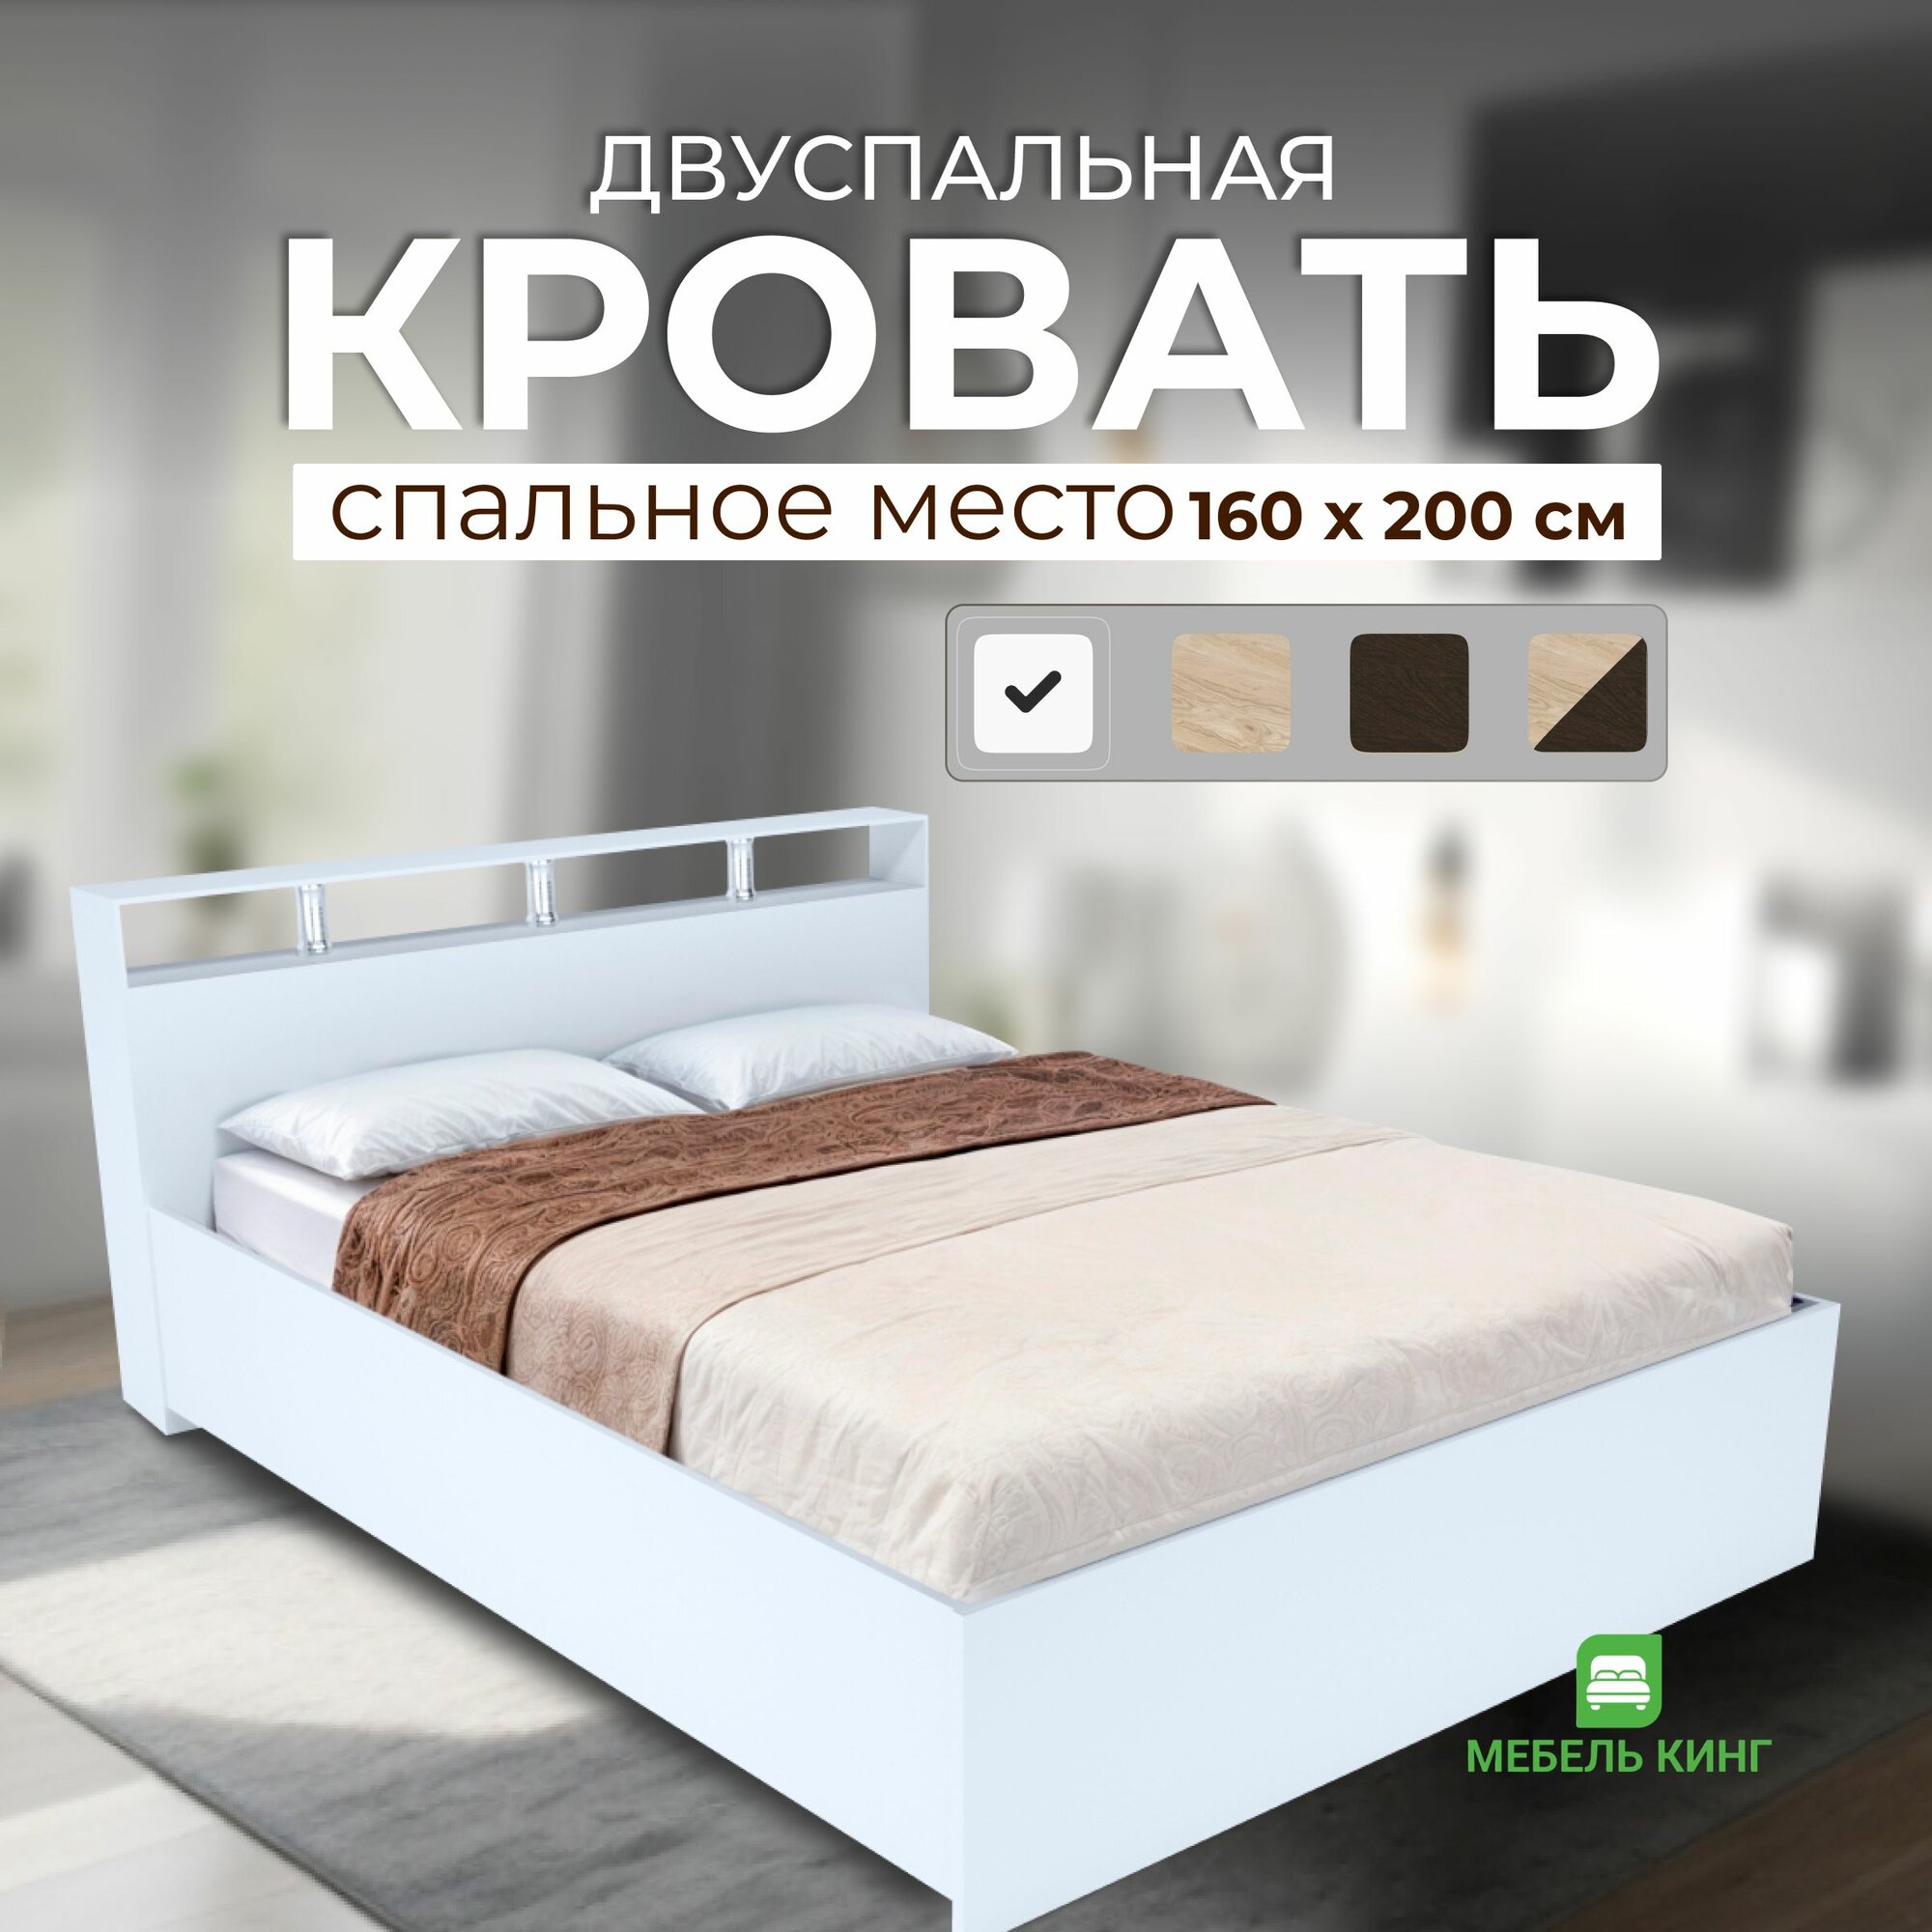 Двуспальная кровать Саломея 160х200, белая, Мебель Кинг